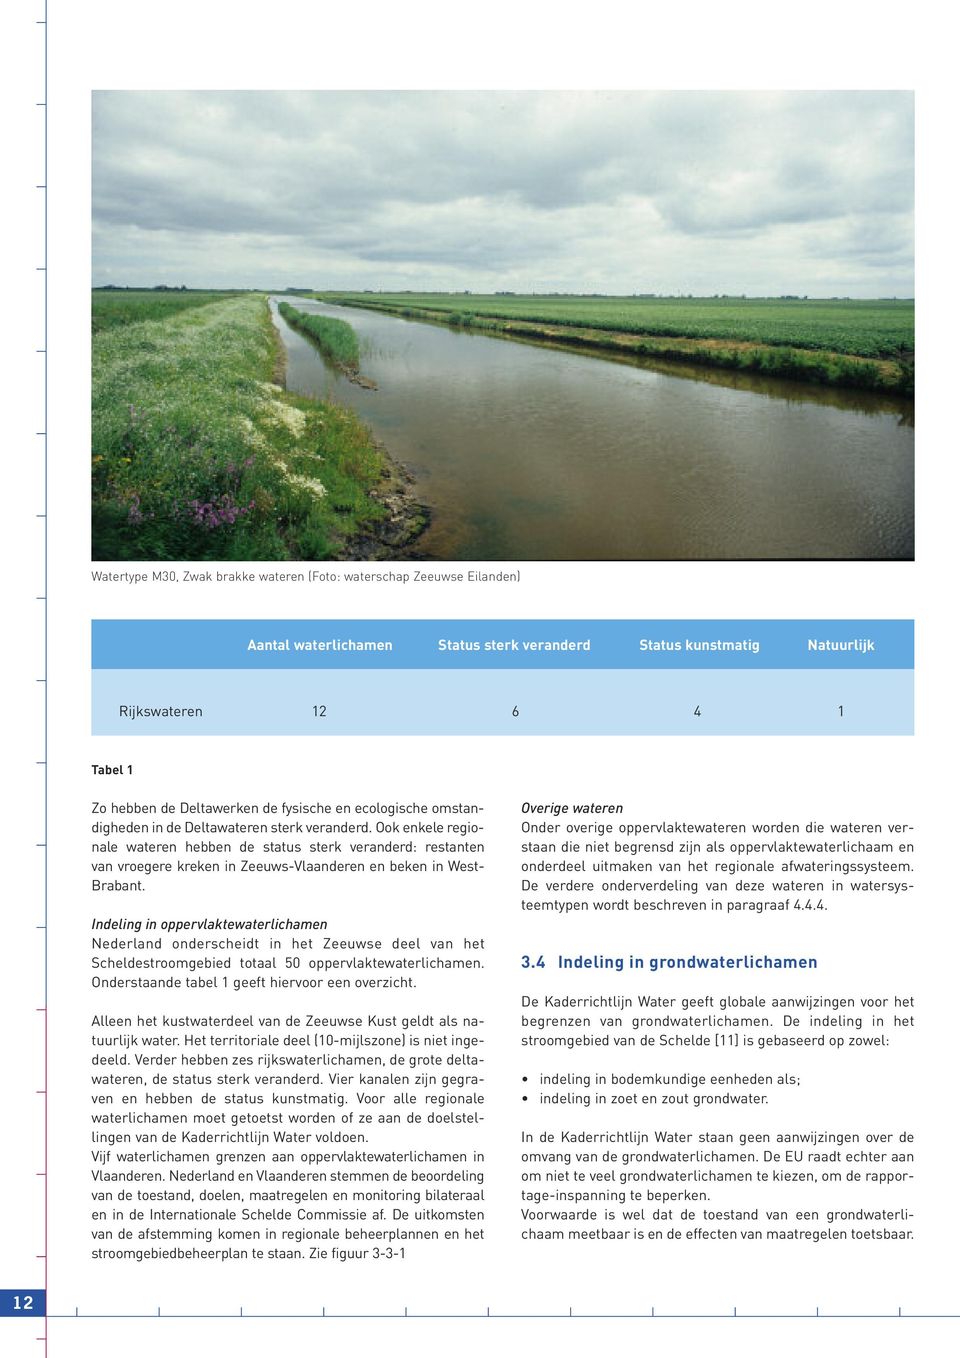 Ook en kele regionale wateren hebben de status sterk veranderd: restanten van vroegere kreken in Zeeuws-Vlaanderen en be ken in West- Brabant.